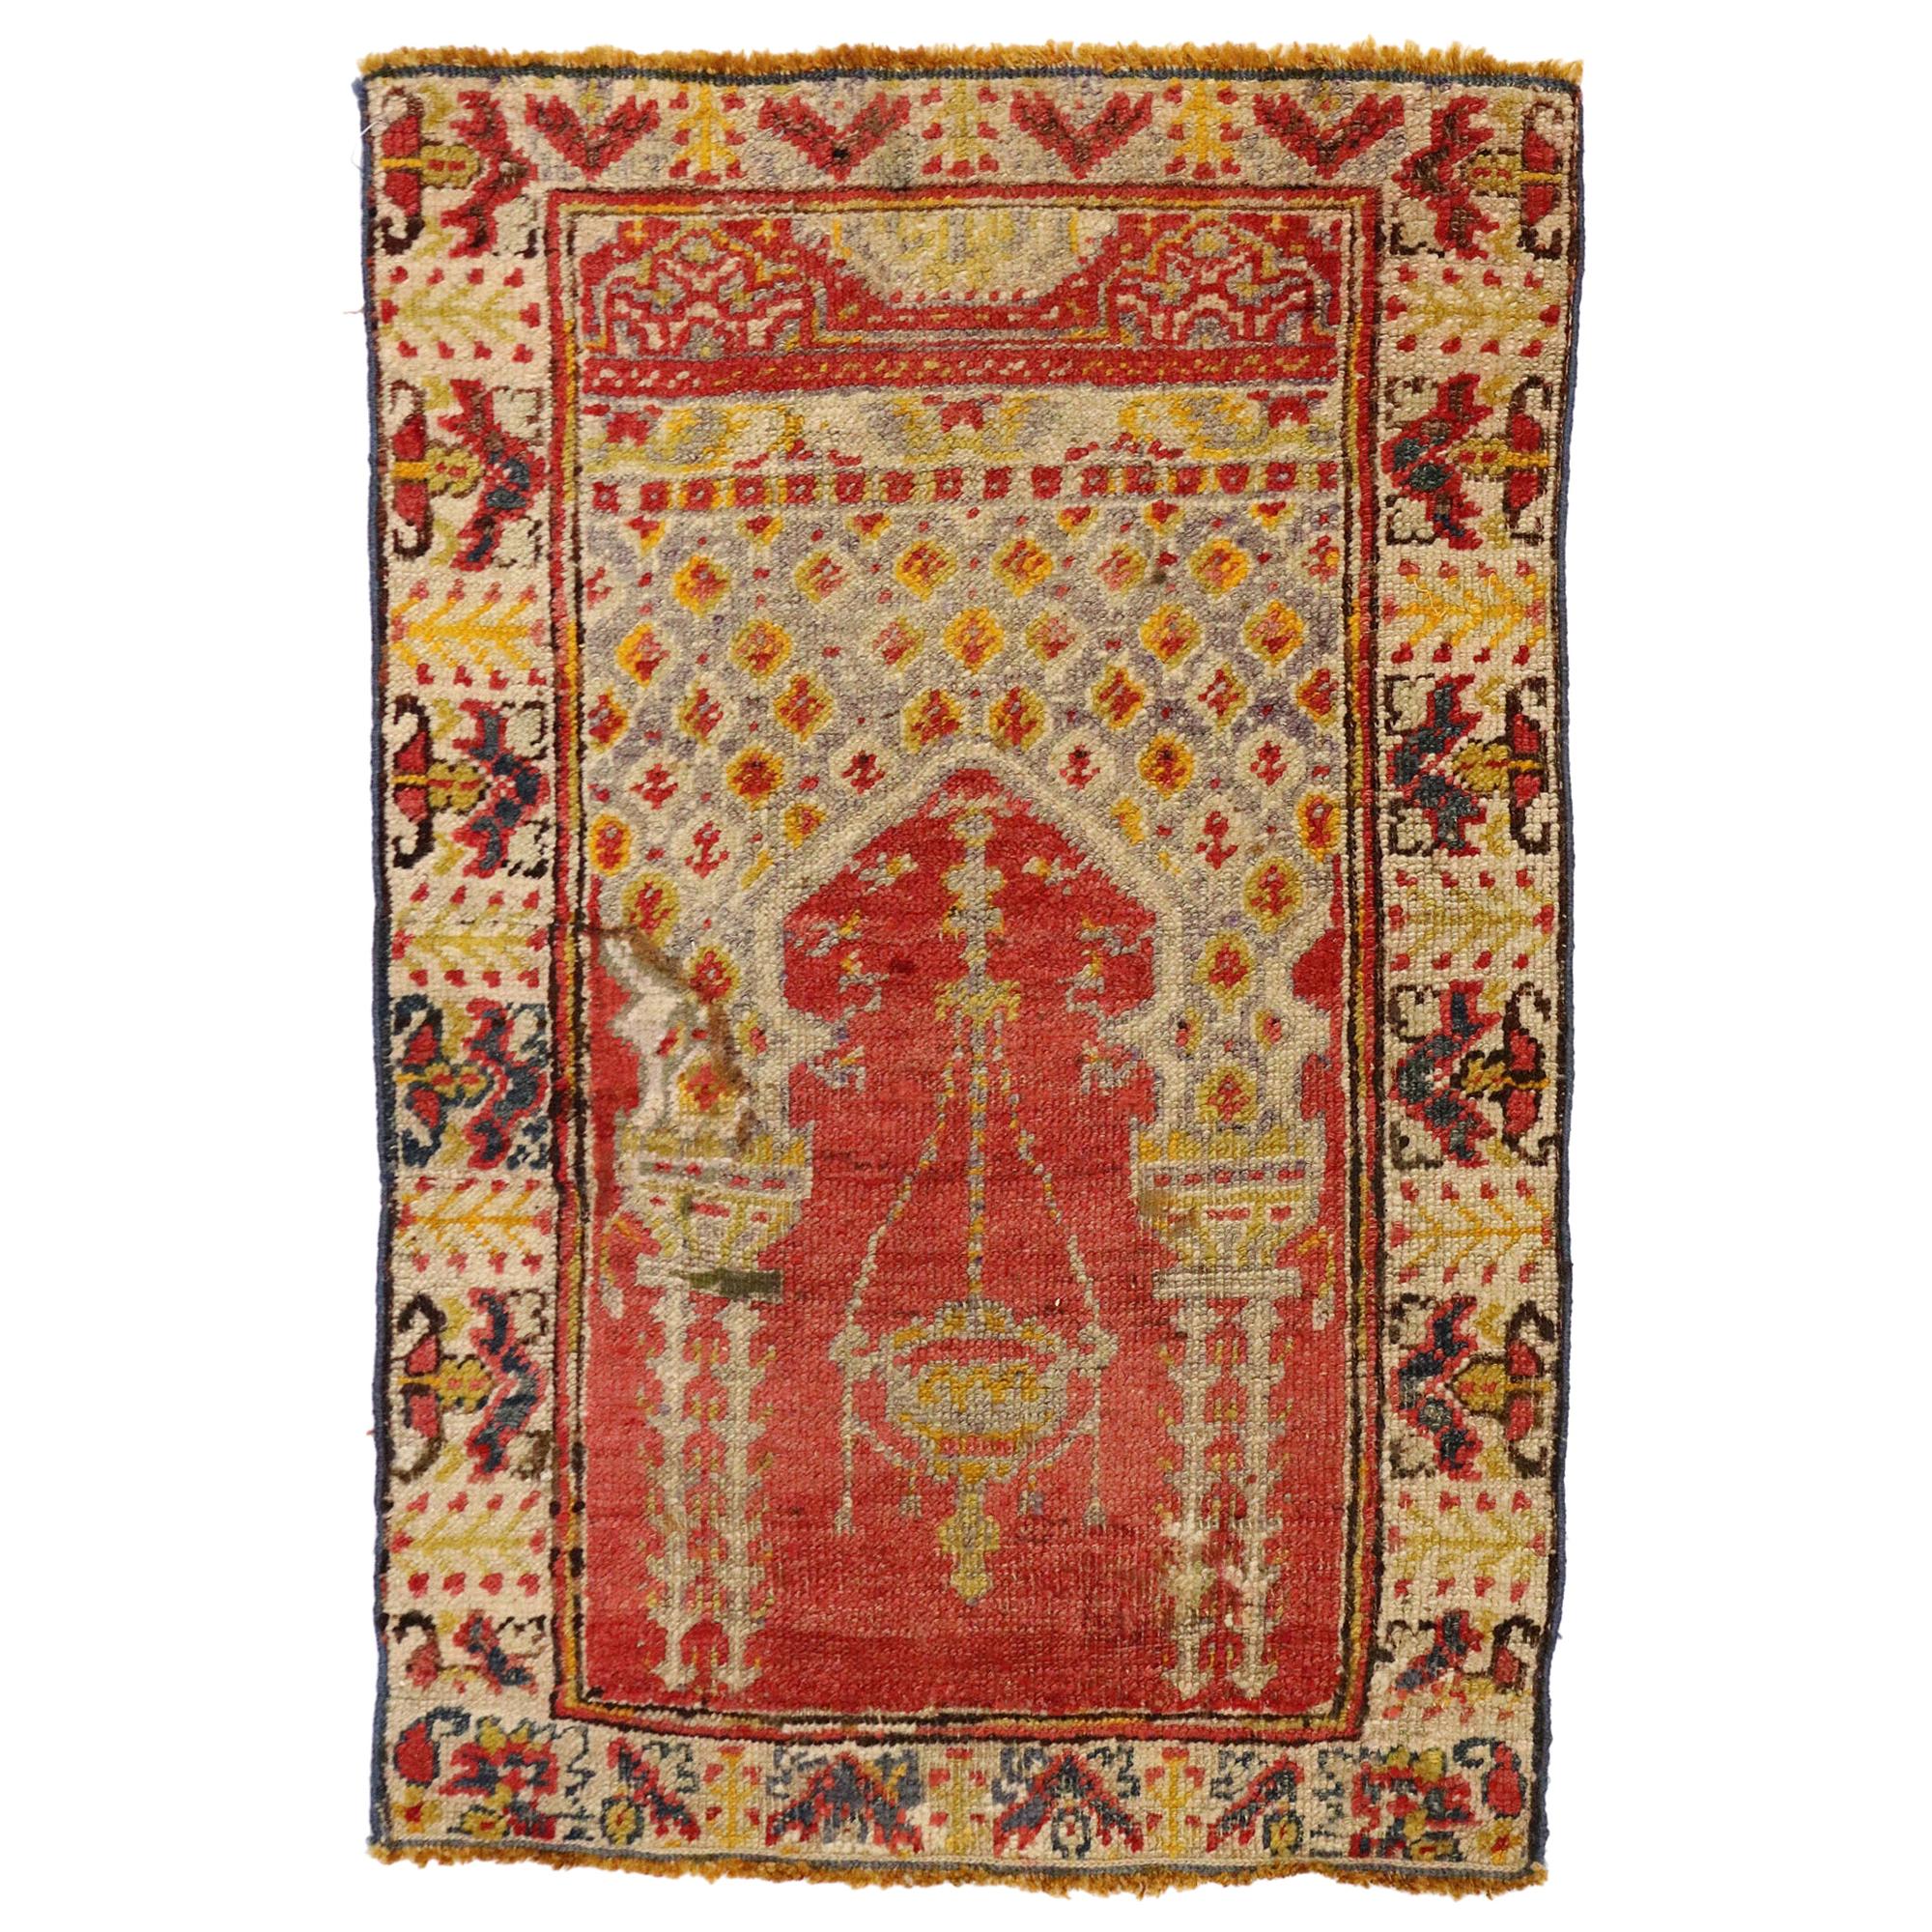 Türkischer Yastik Oushak-Teppich im Usak-Stil, türkischer Gebetteppich im Usak-Stil, Vintage